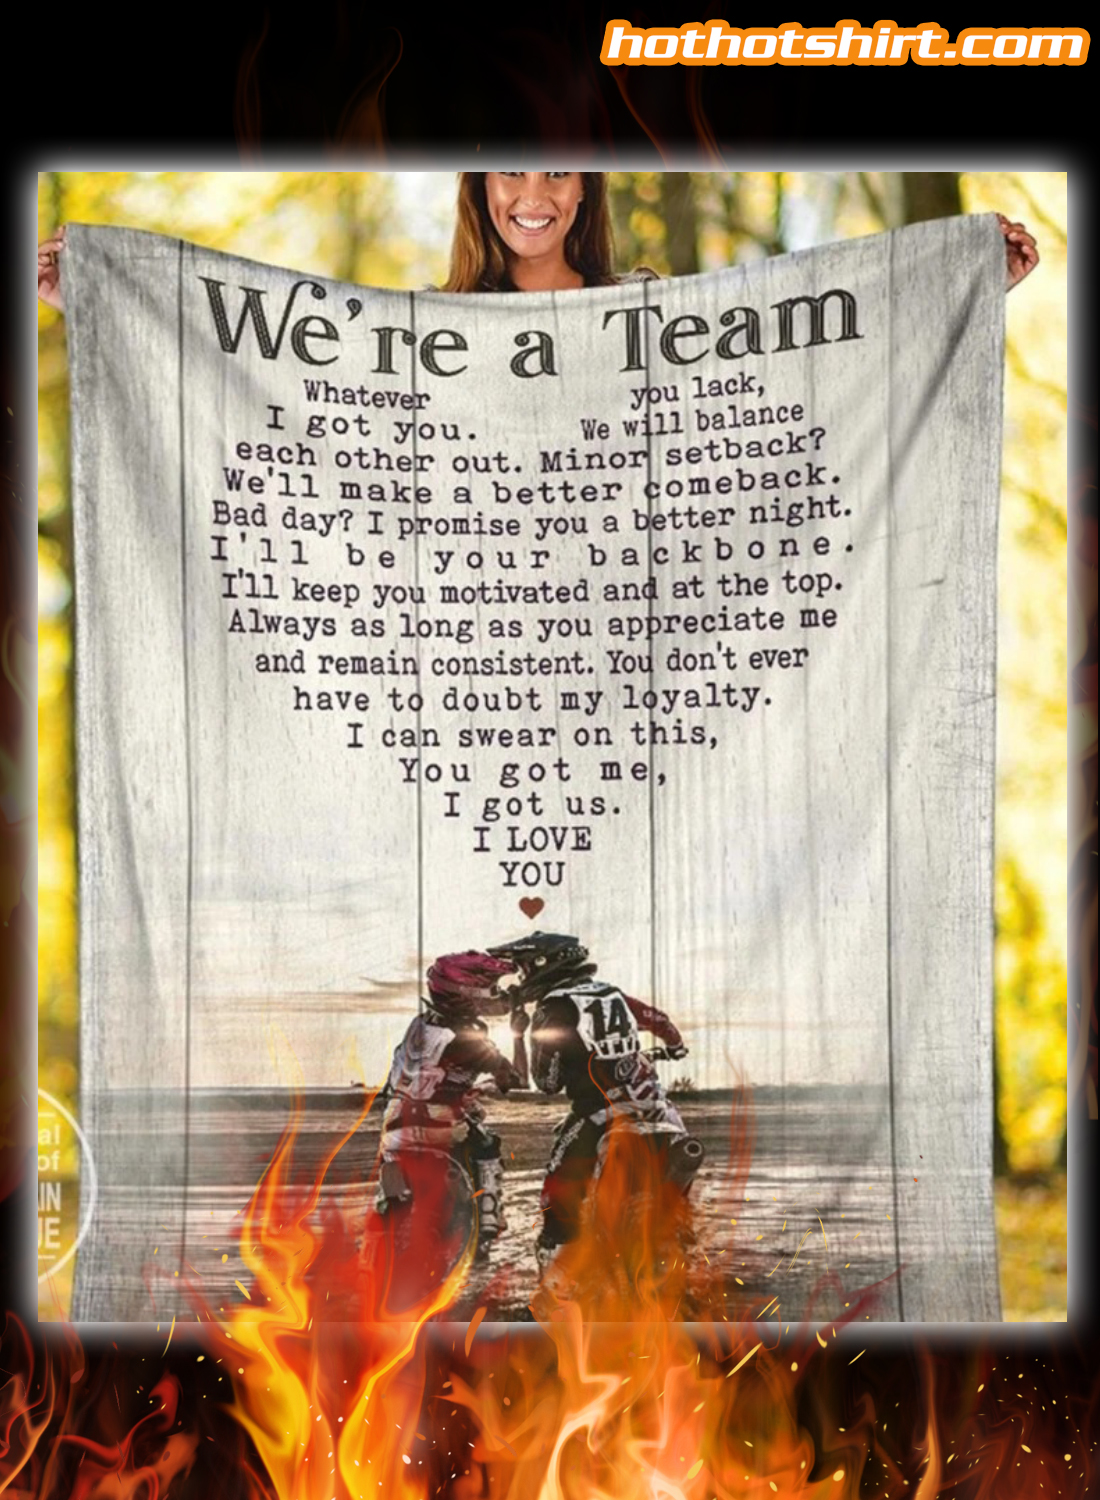 Motorcross we're a team you got me i got us blanket